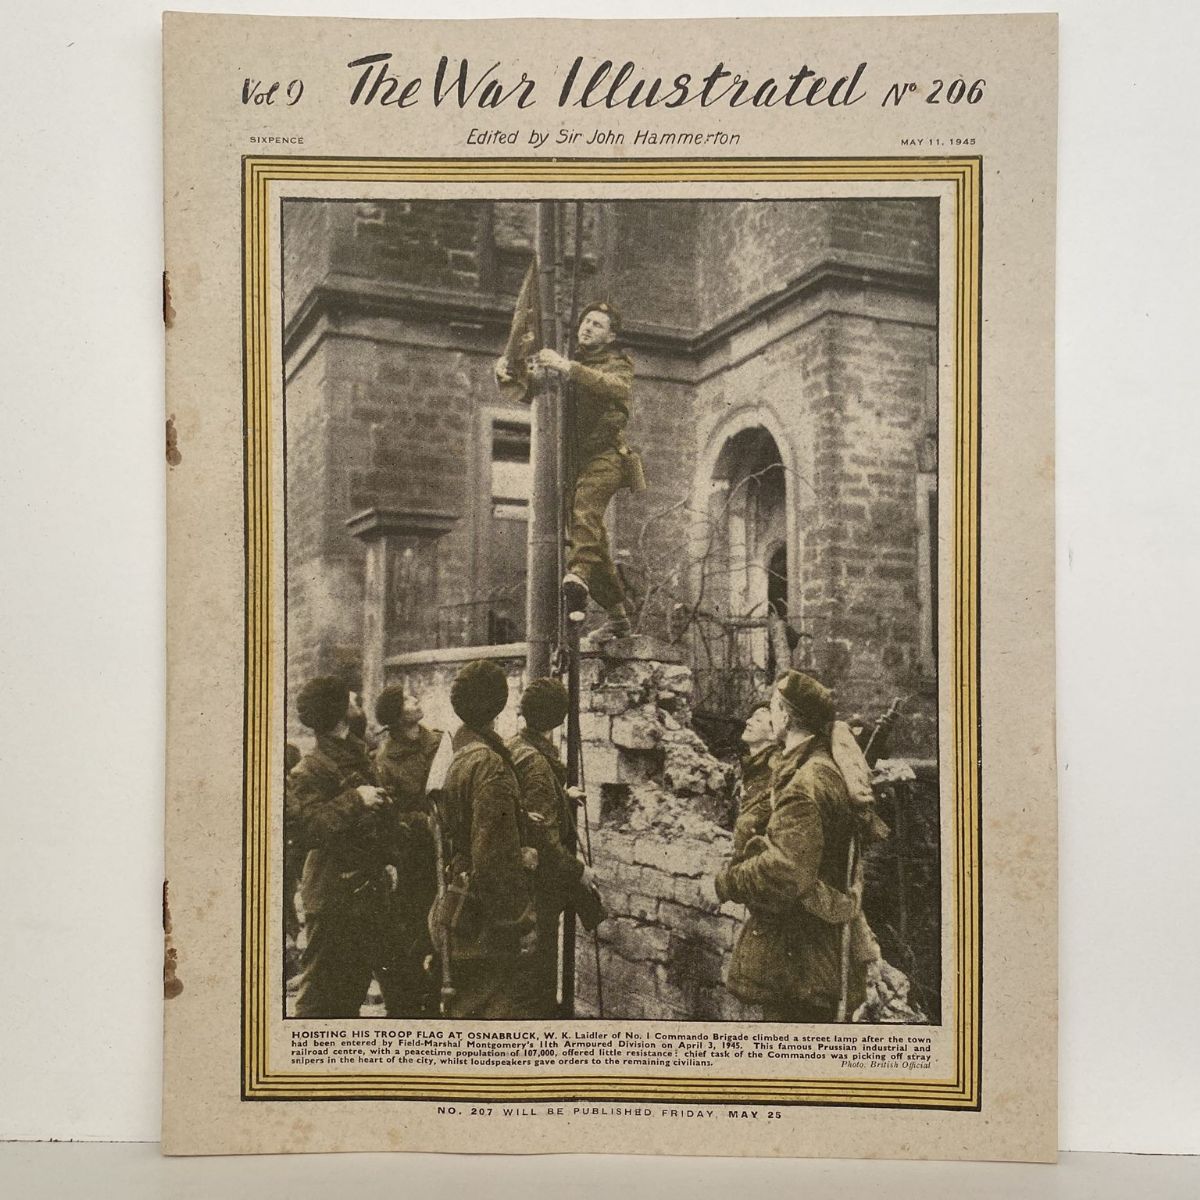 THE WAR ILLUSTRATED - Vol 9, No 206, 11th May 1945